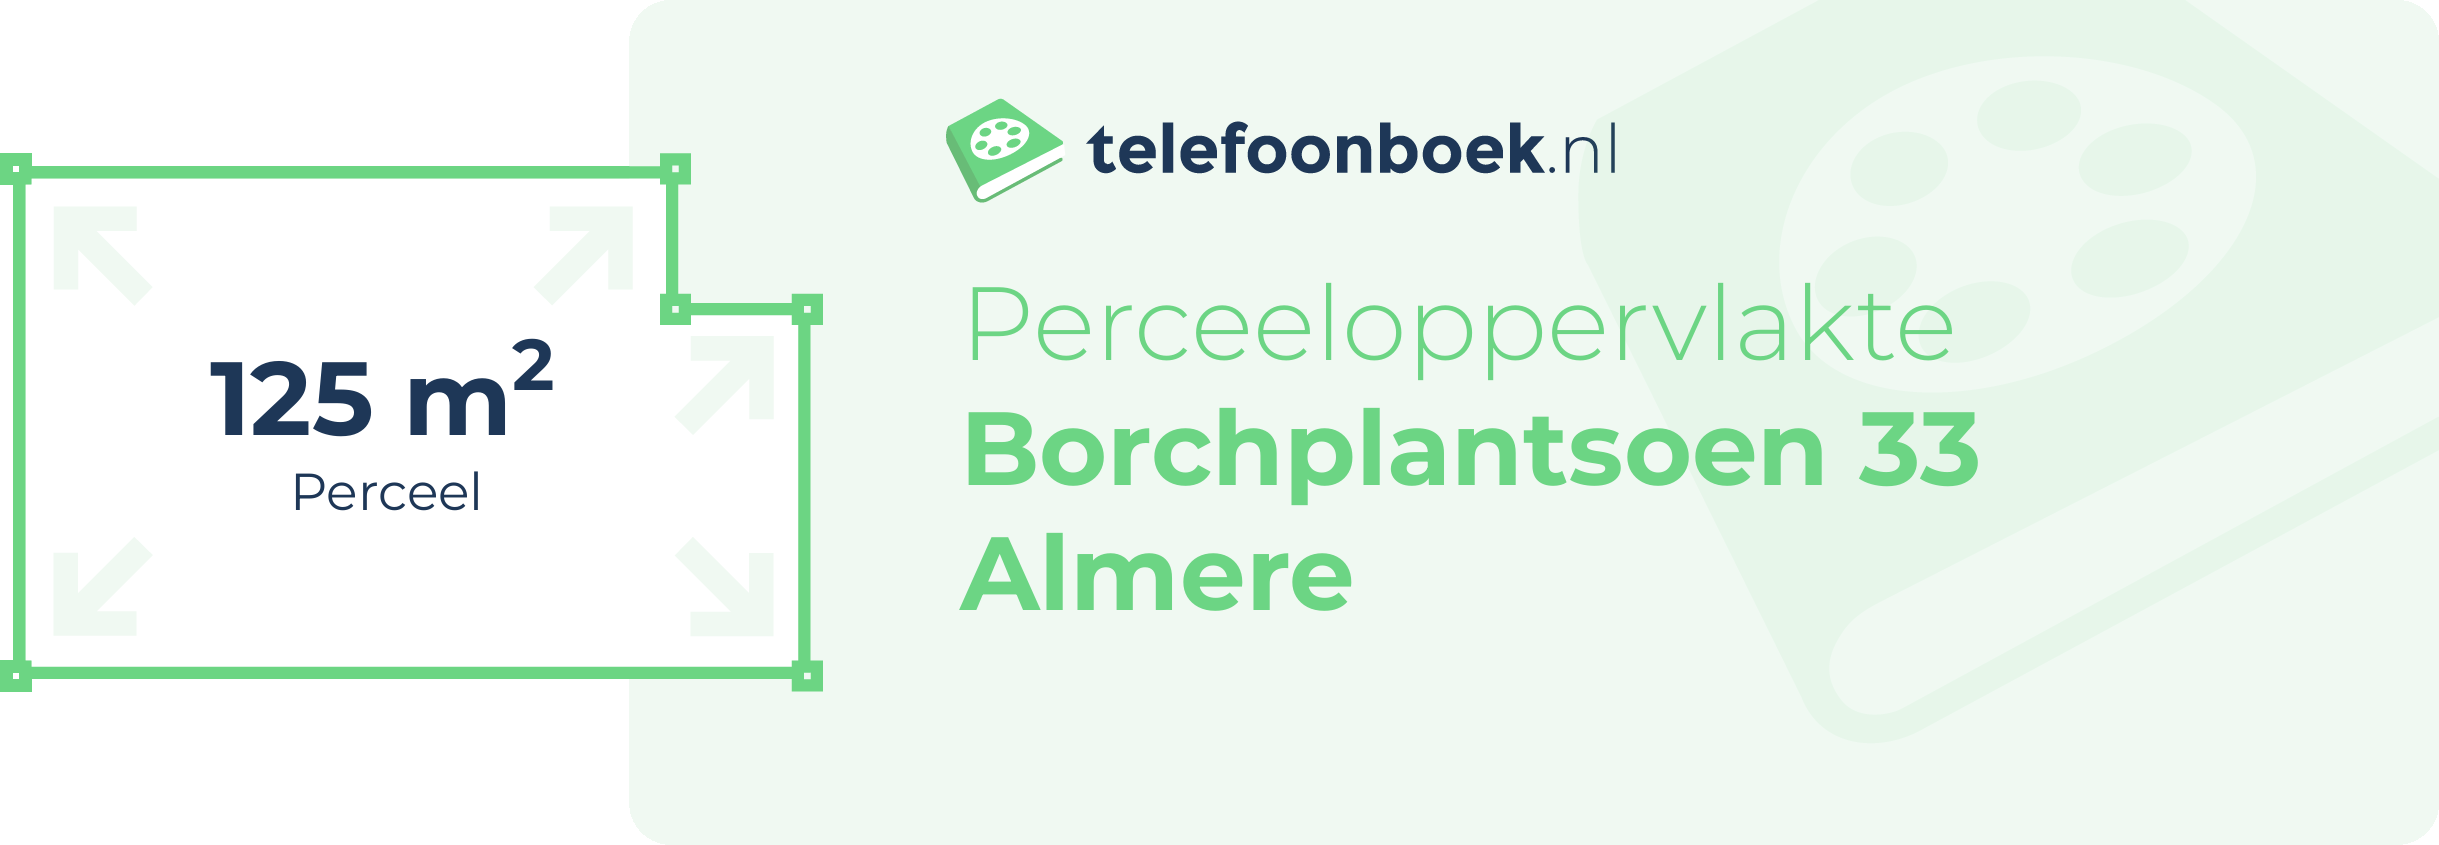 Perceeloppervlakte Borchplantsoen 33 Almere